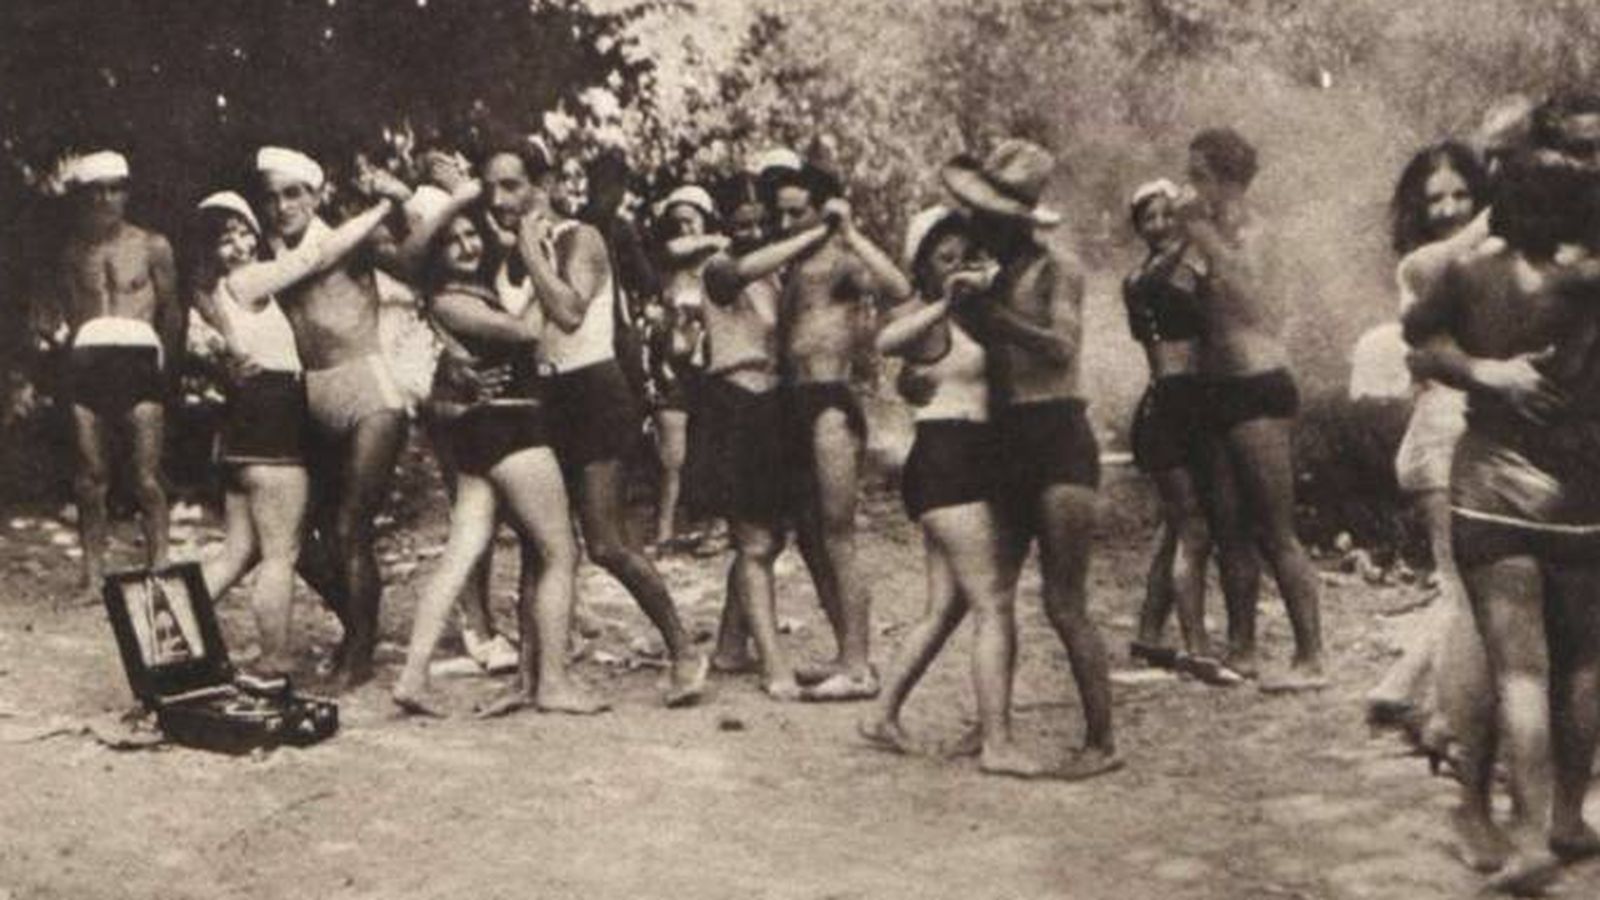 Baile de bañistas en el Puente de los Franceses en agosto de 1931. (Díaz Casariego, Revista Crónica)